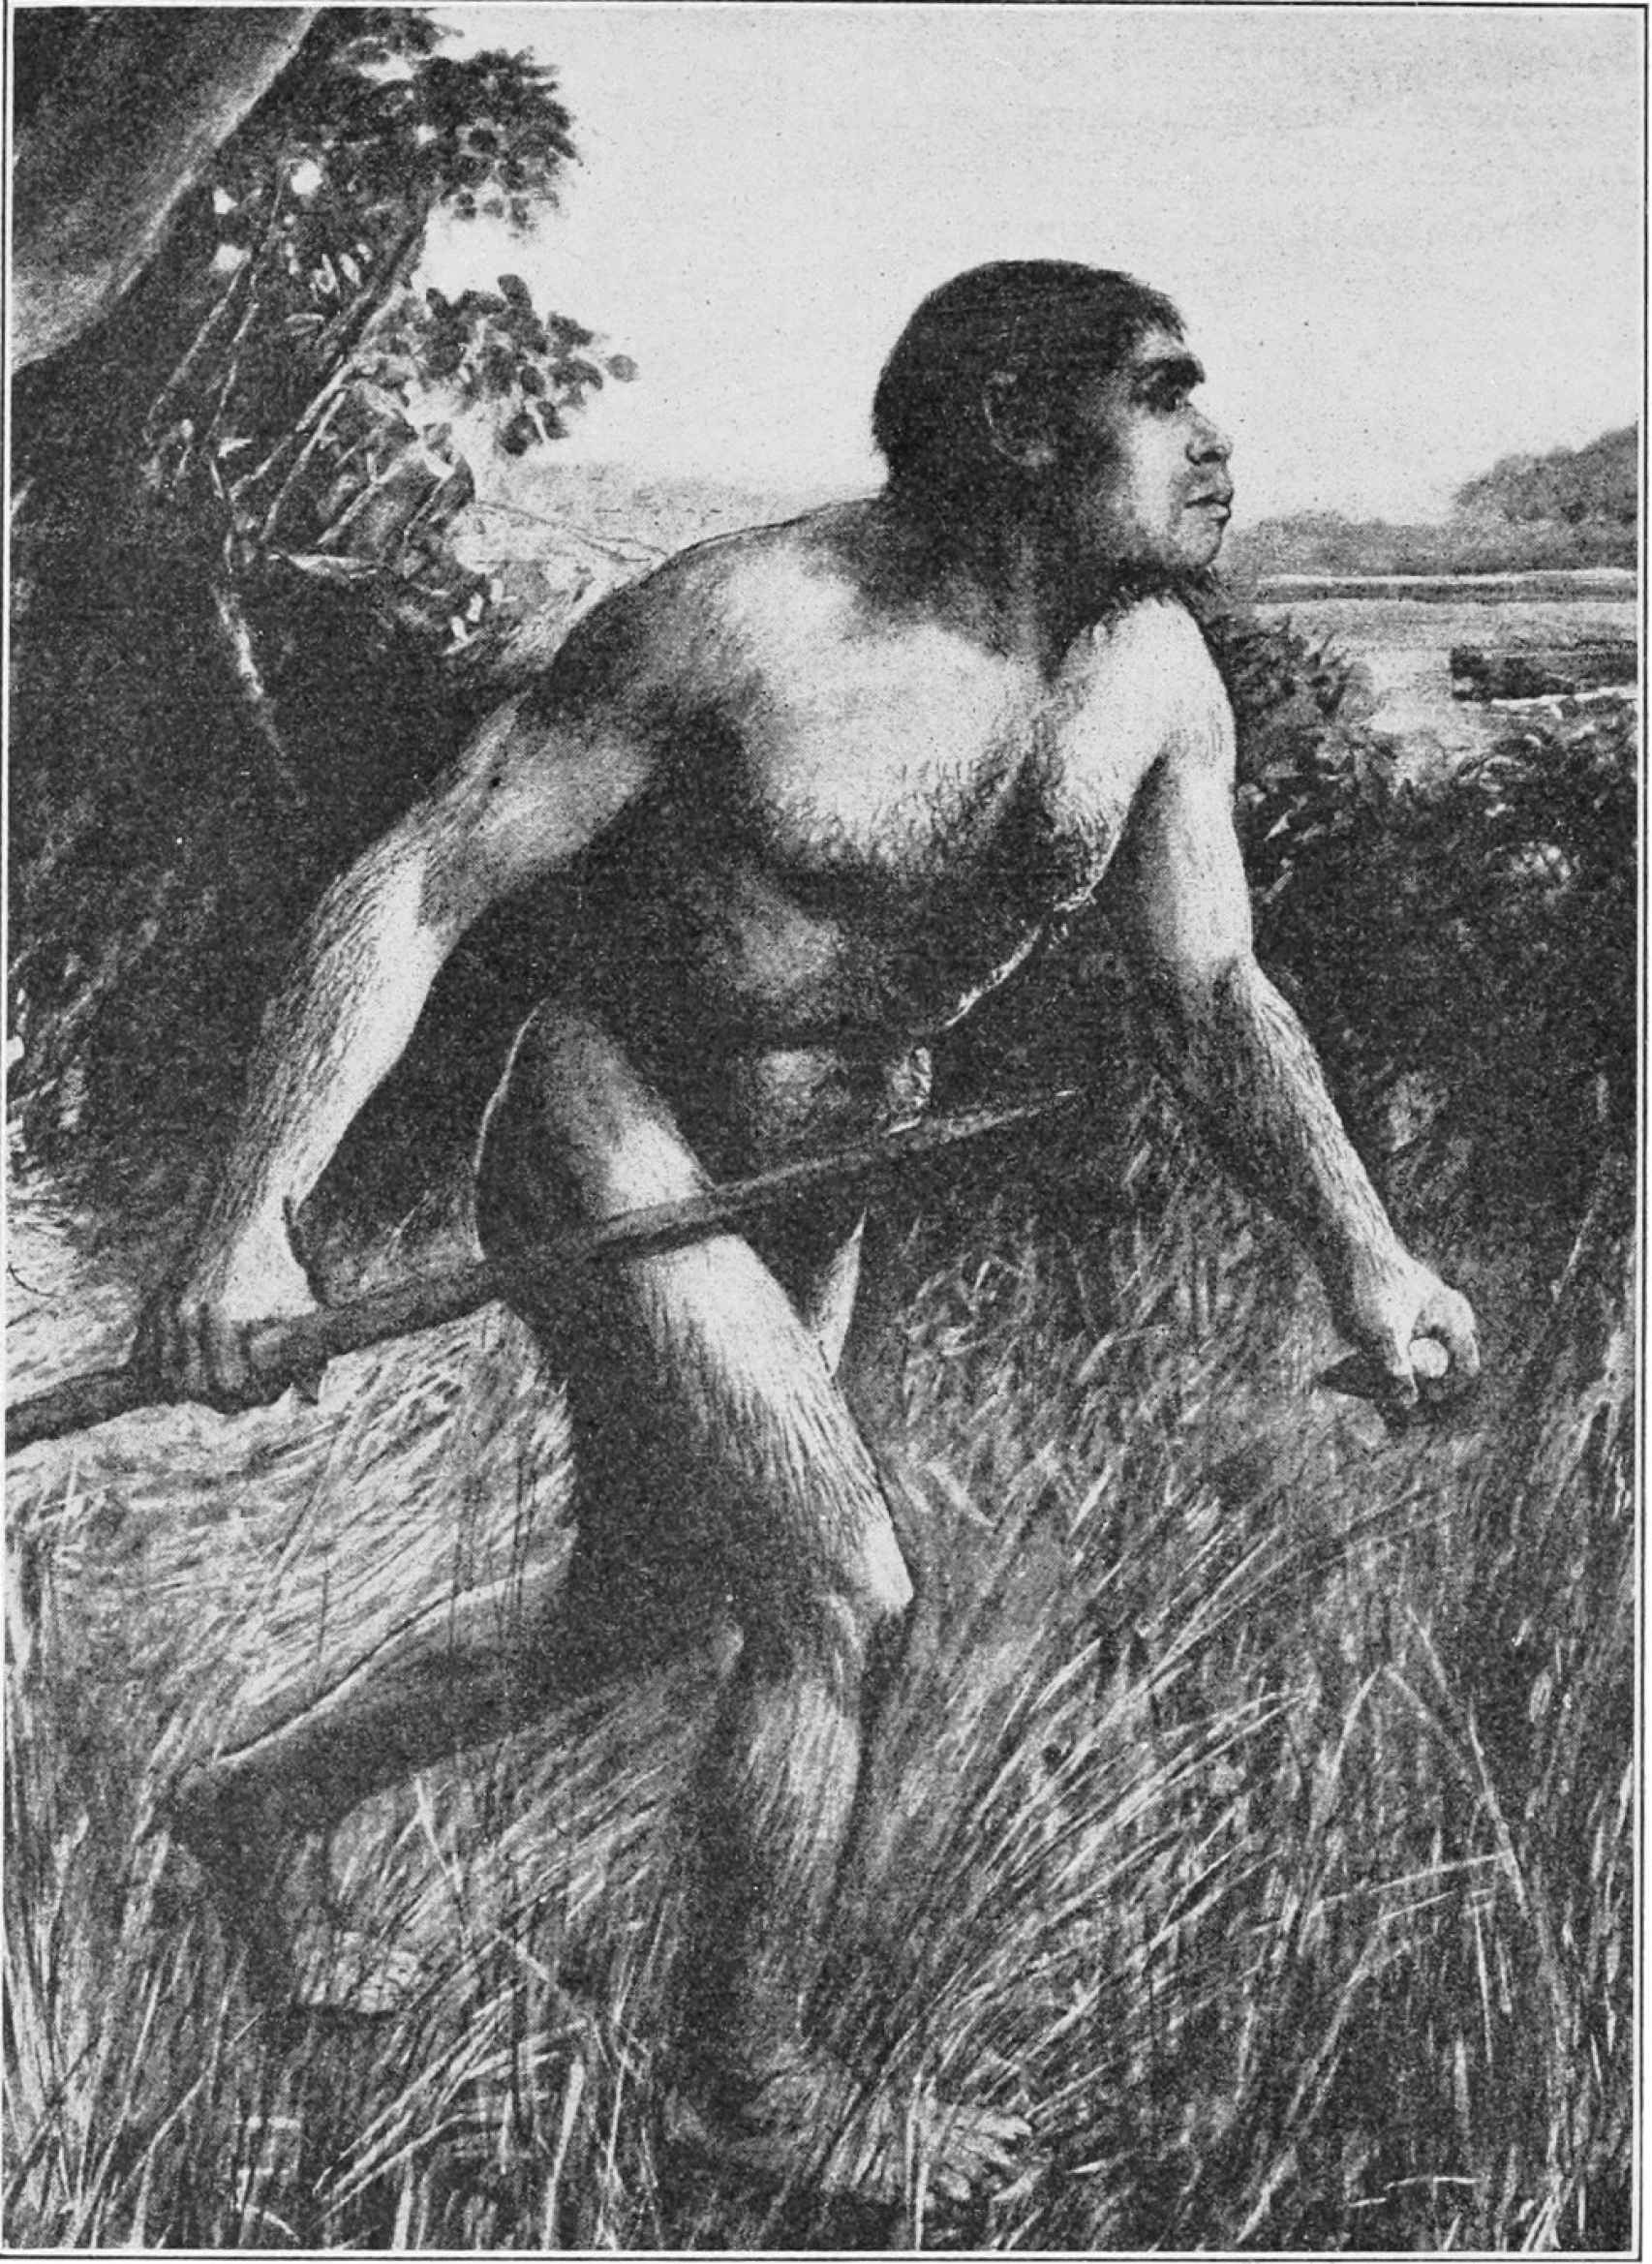 Ilustración idealizada del hombre de Piltdown en 1913